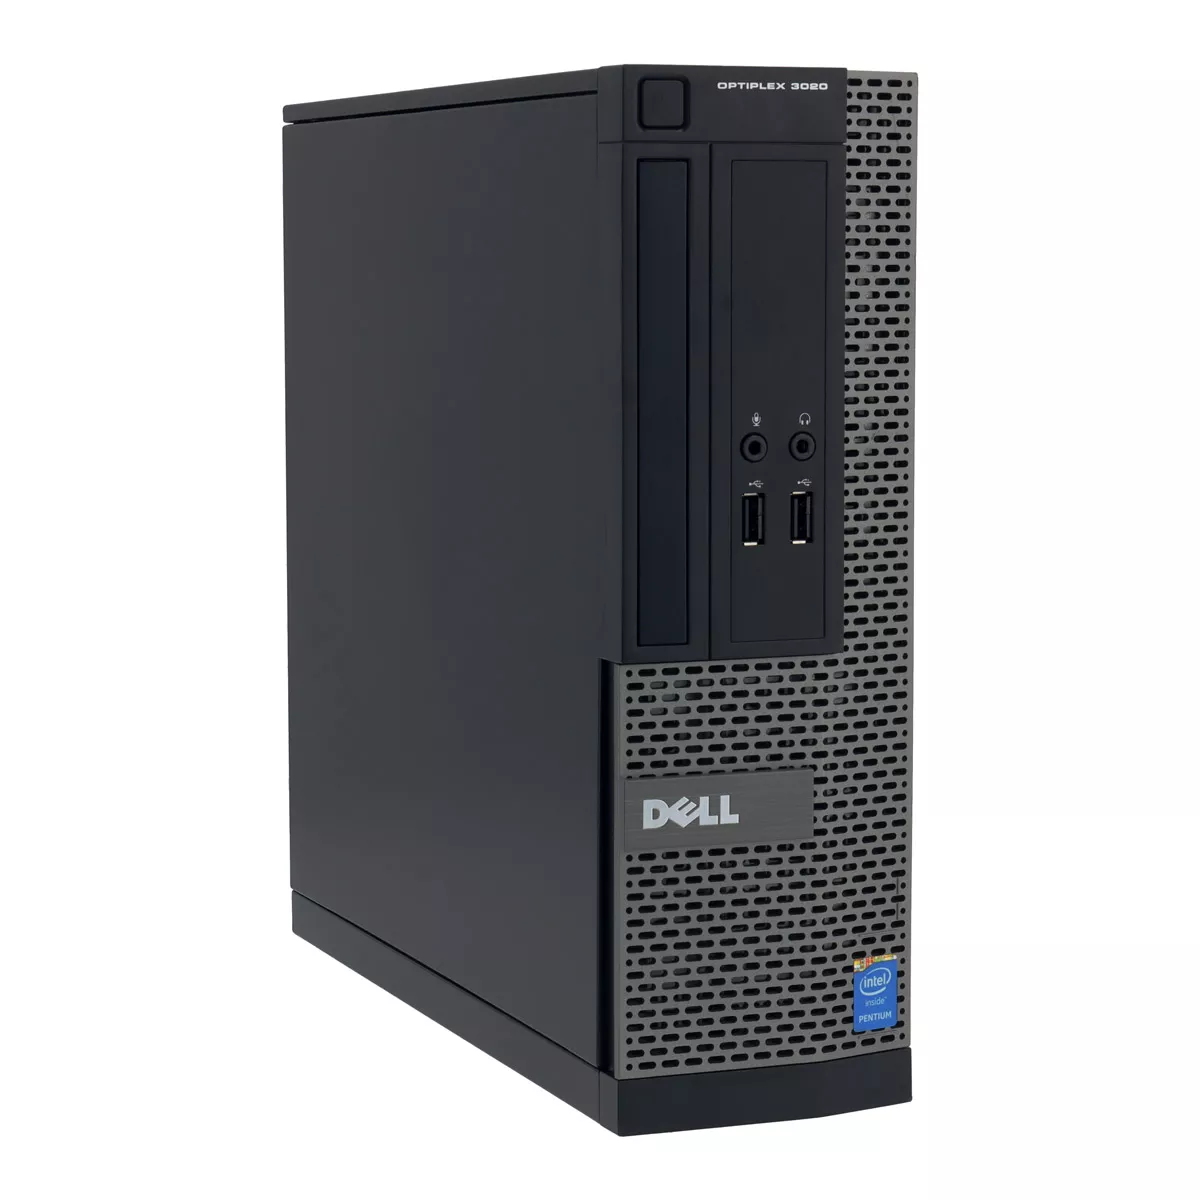 Dell Optiplex 3050 Mini Tower Core i5 6500 3,20 GHz 8 GB 500 GB SSD A+